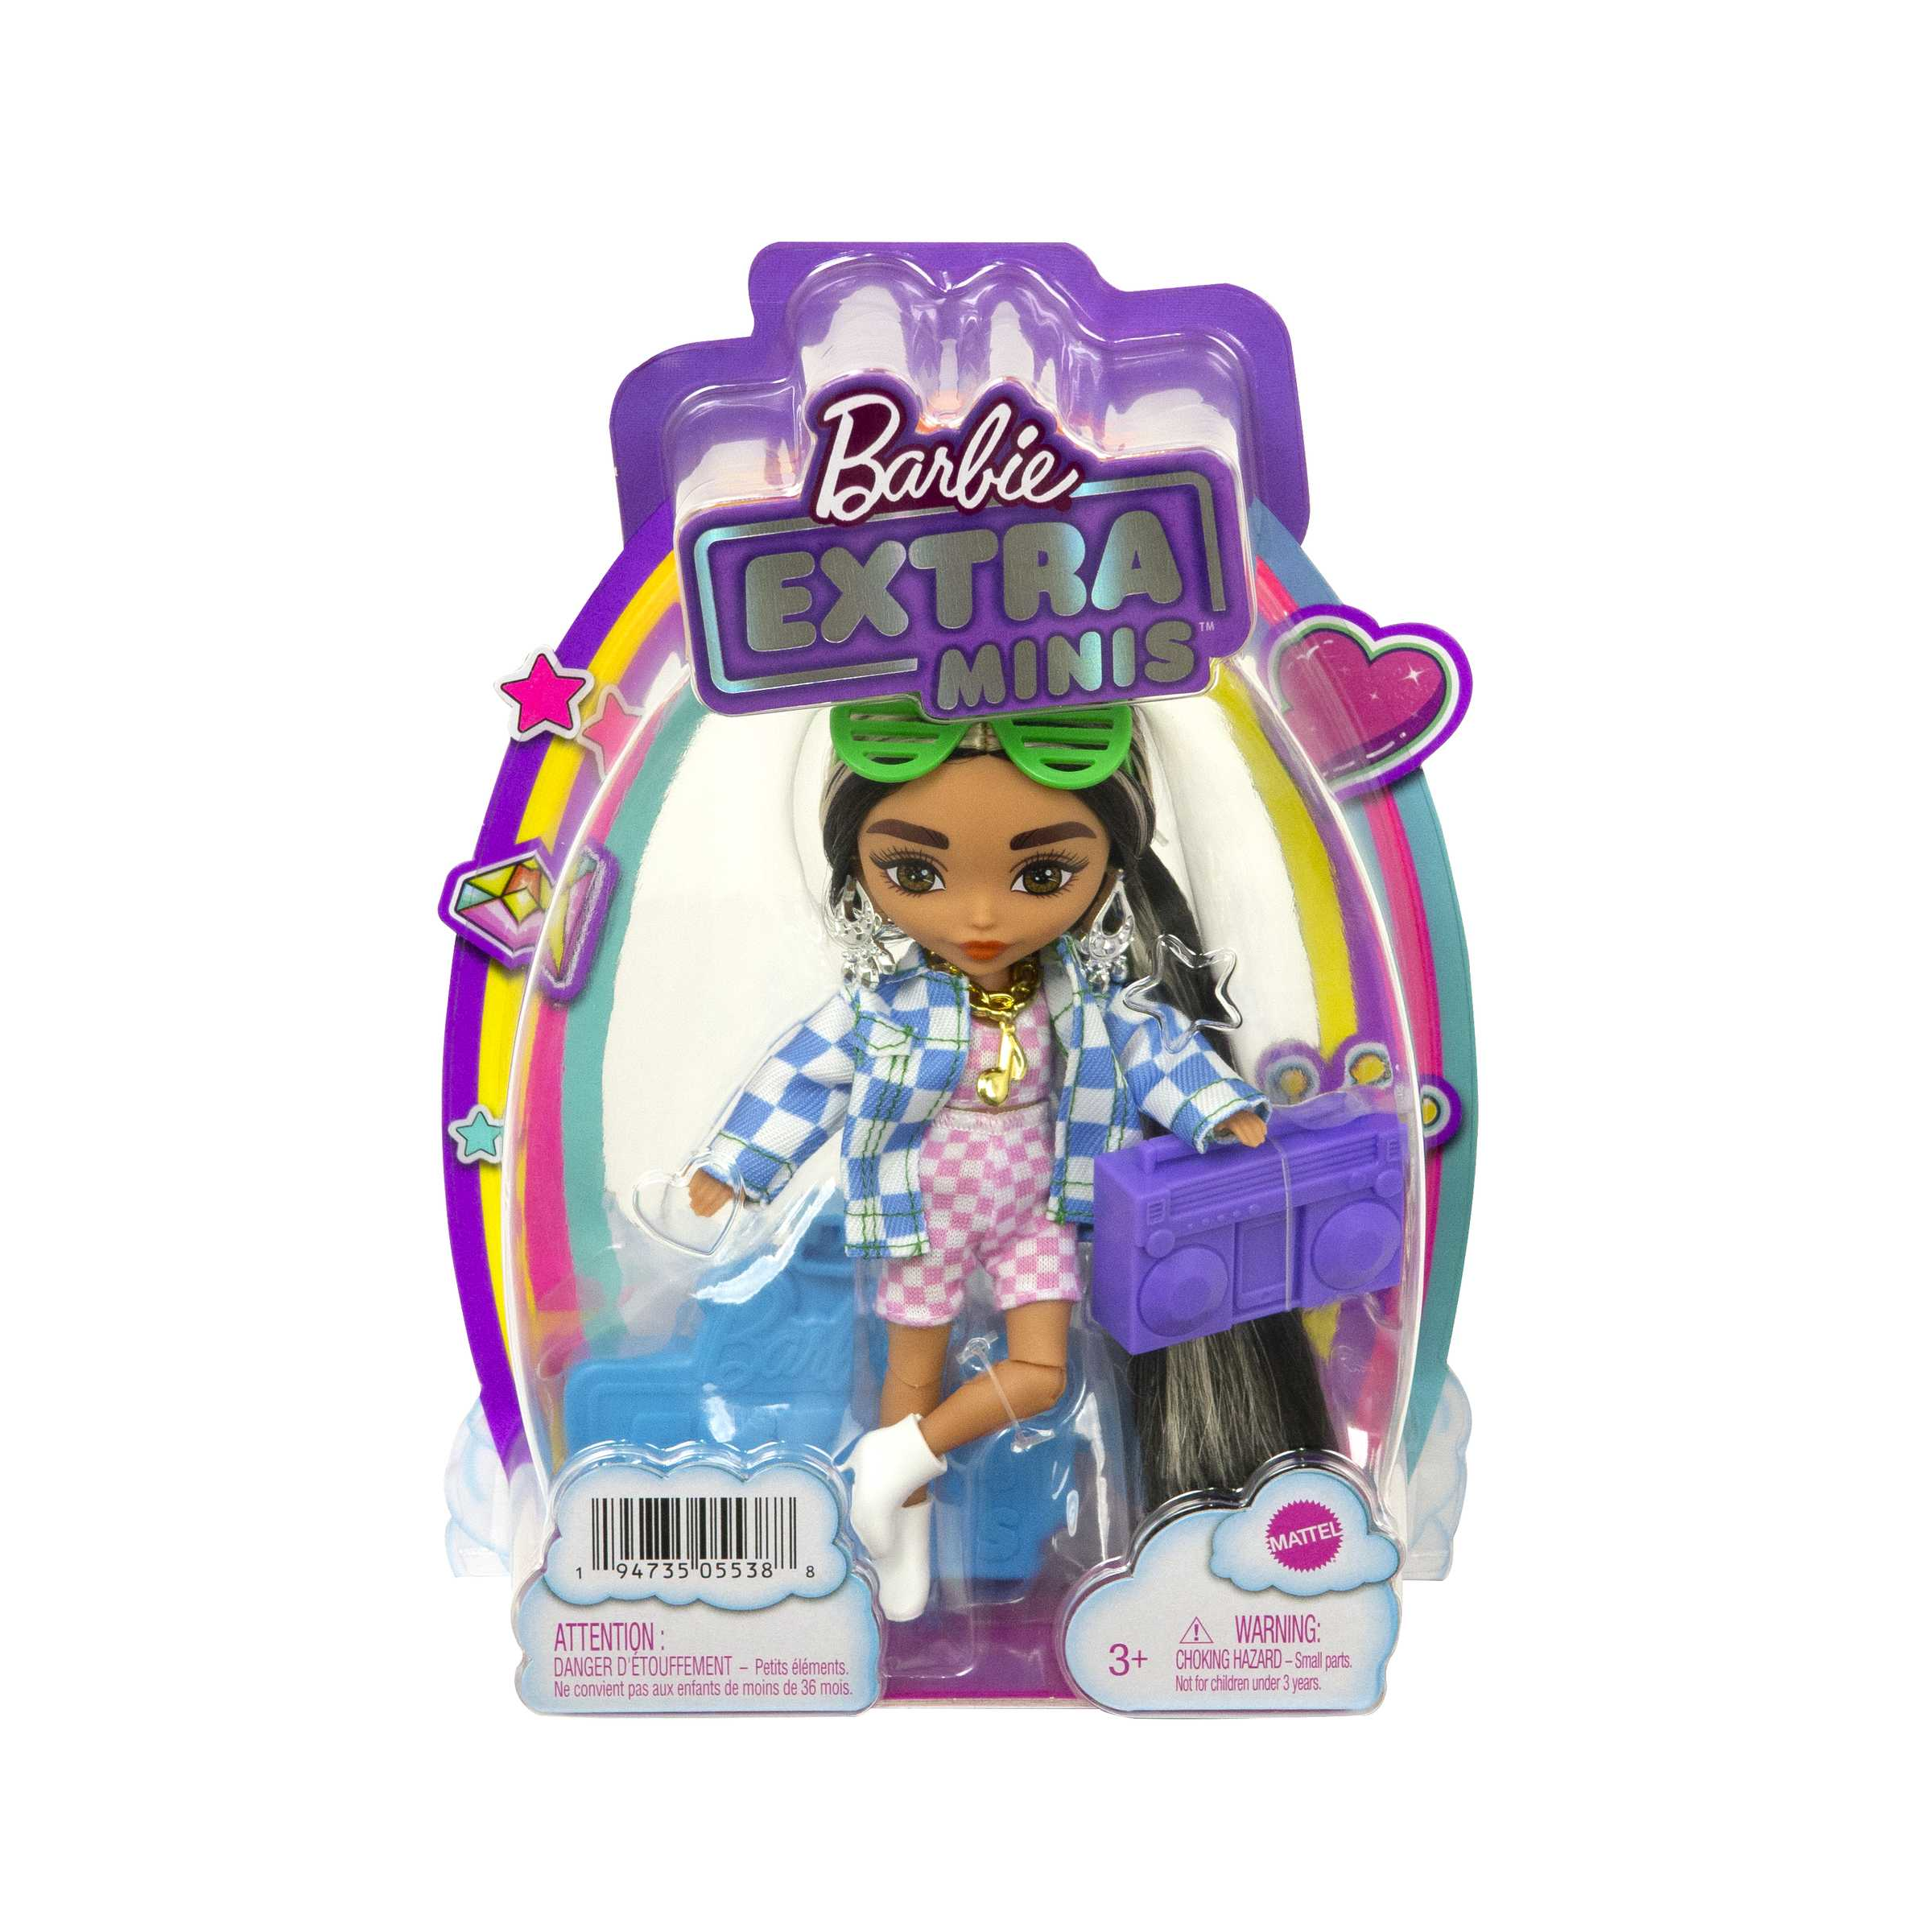 Barbie-extra minis mini bambola articolata con giacca a quadri e morbidi capelli bicolore, giocattolo per bambini 3+ anni, hgp64 - Barbie